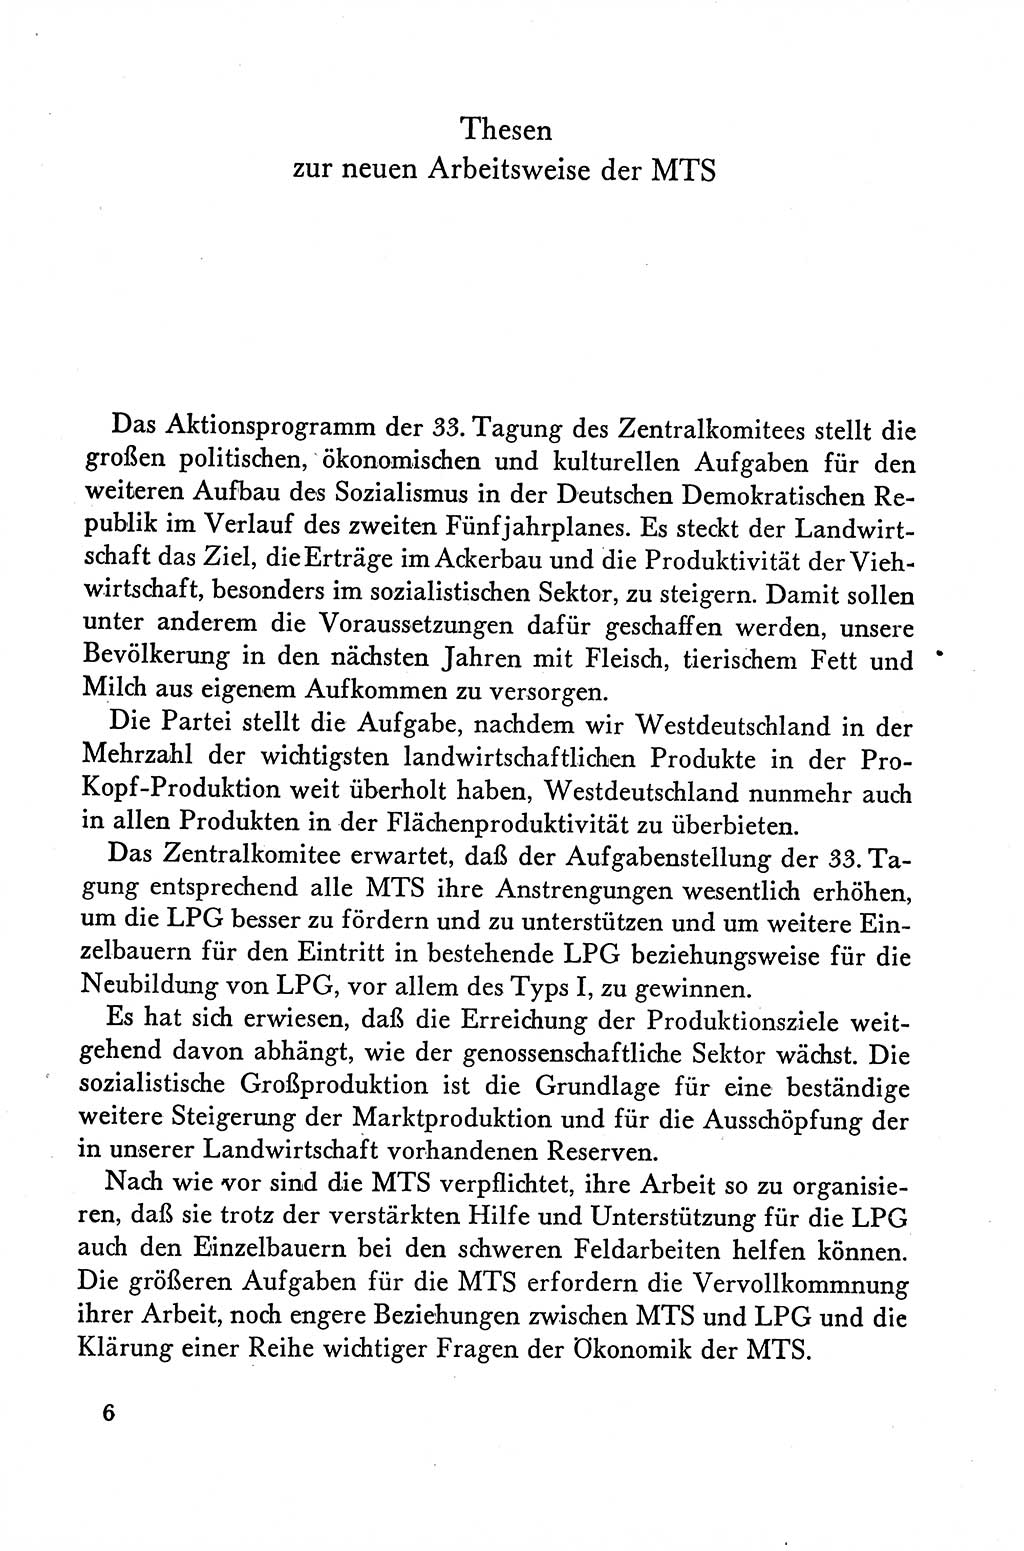 Dokumente der Sozialistischen Einheitspartei Deutschlands (SED) [Deutsche Demokratische Republik (DDR)] 1958-1959, Seite 6 (Dok. SED DDR 1958-1959, S. 6)